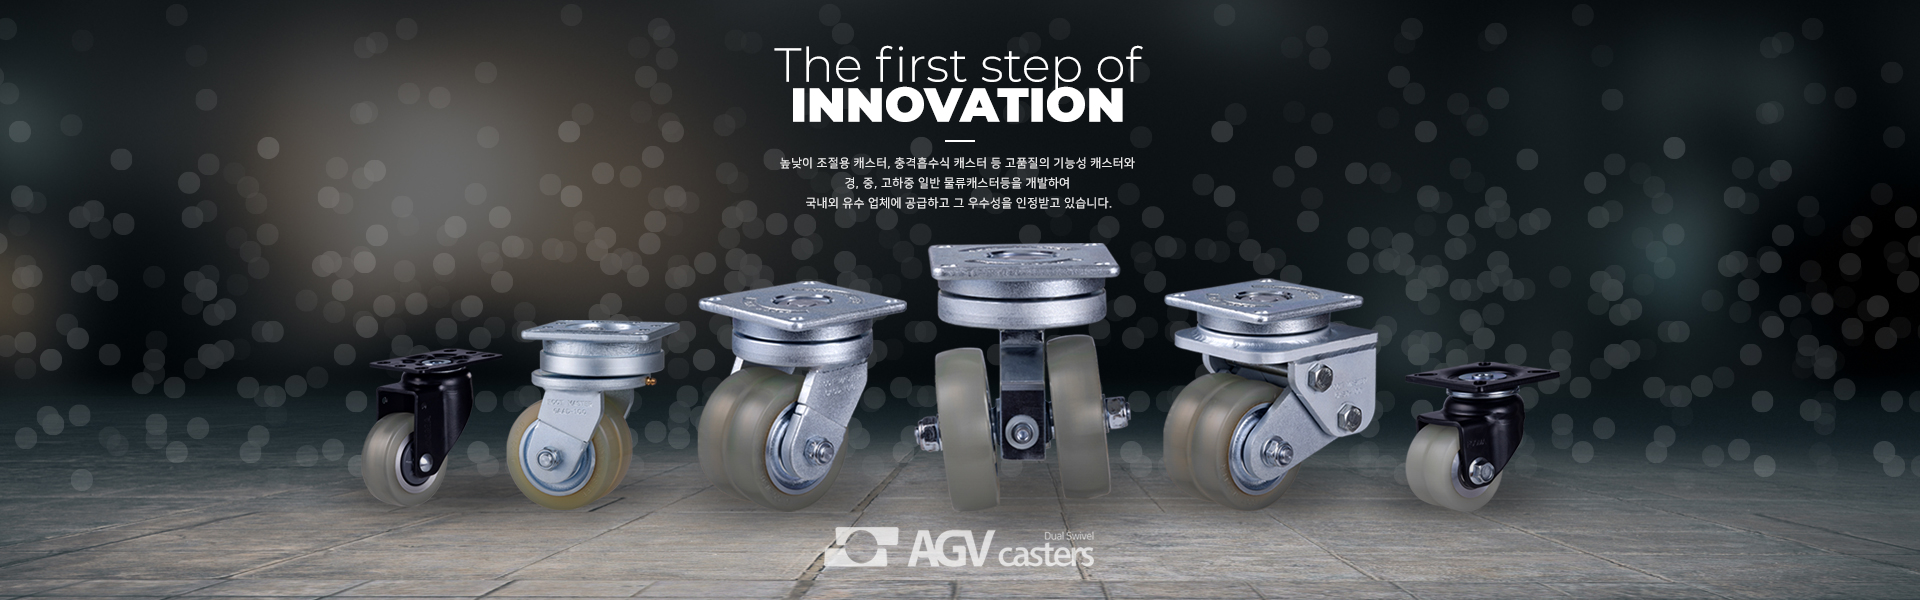 AGV 바퀴, 풋마스터 지덕산업, 혁신을 위한 첫걸음